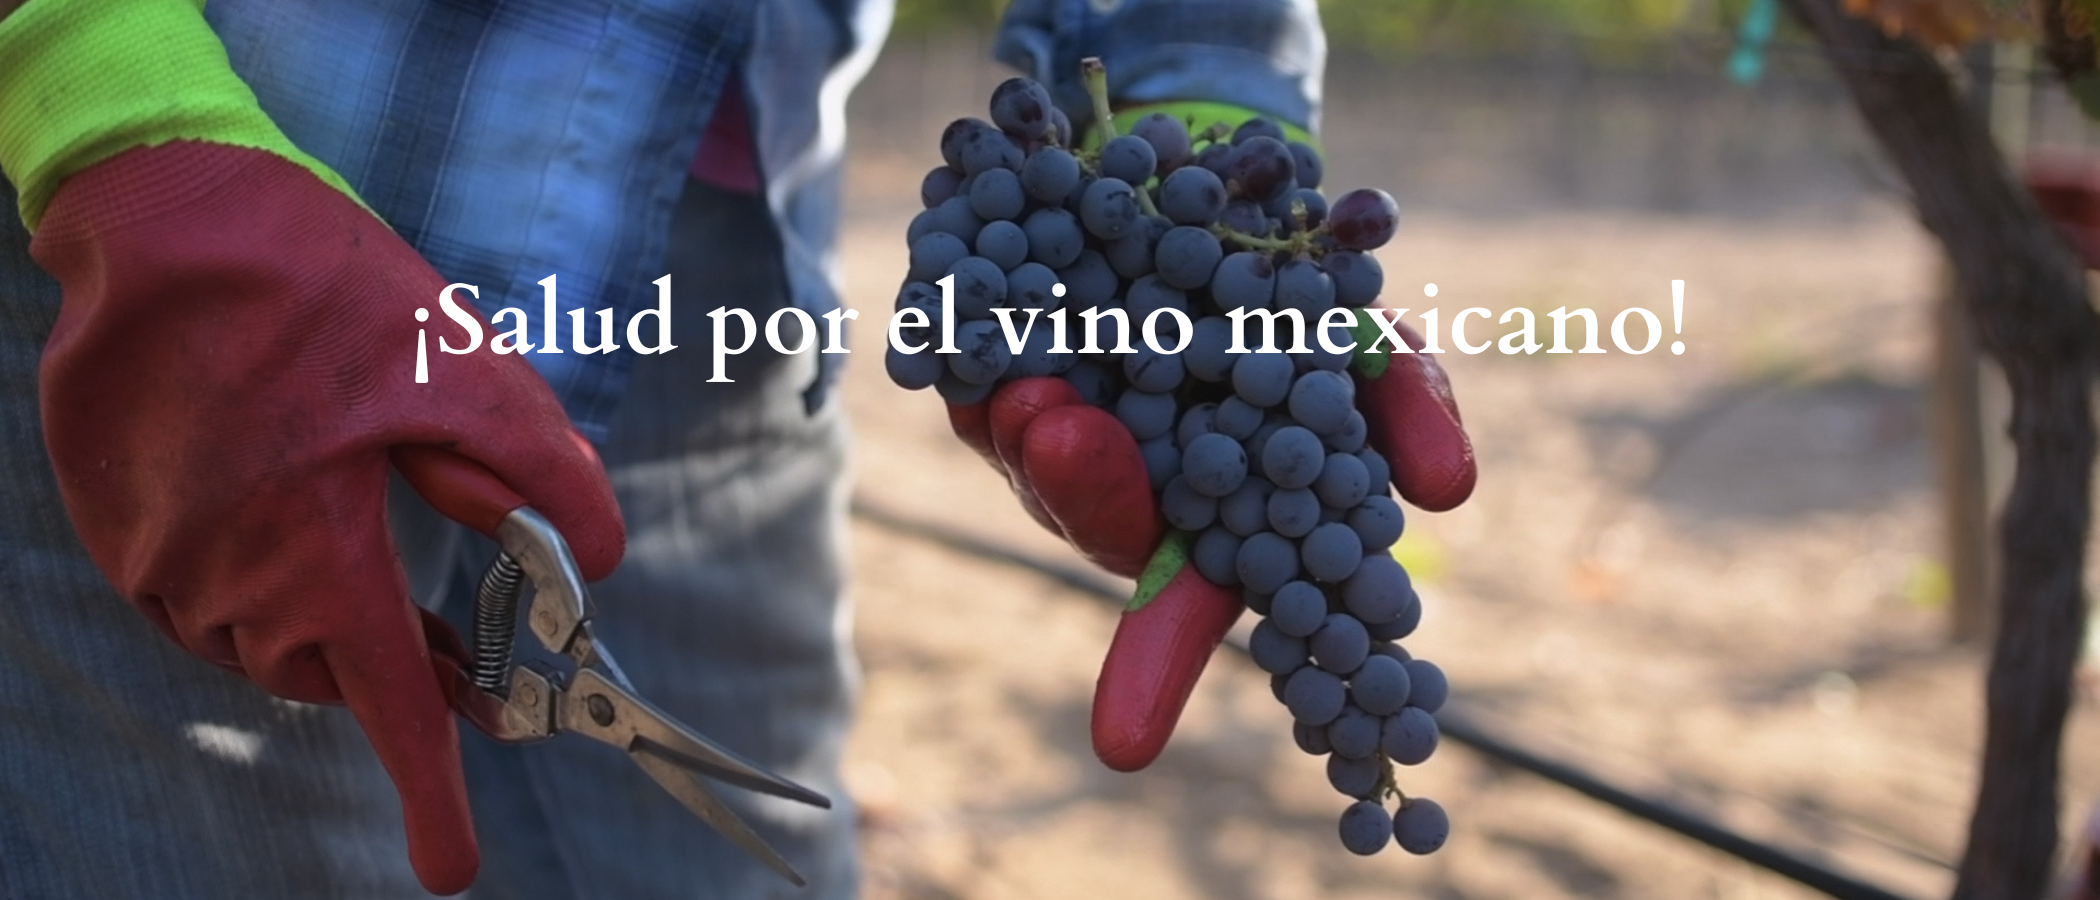 Salud por el vino mexicano